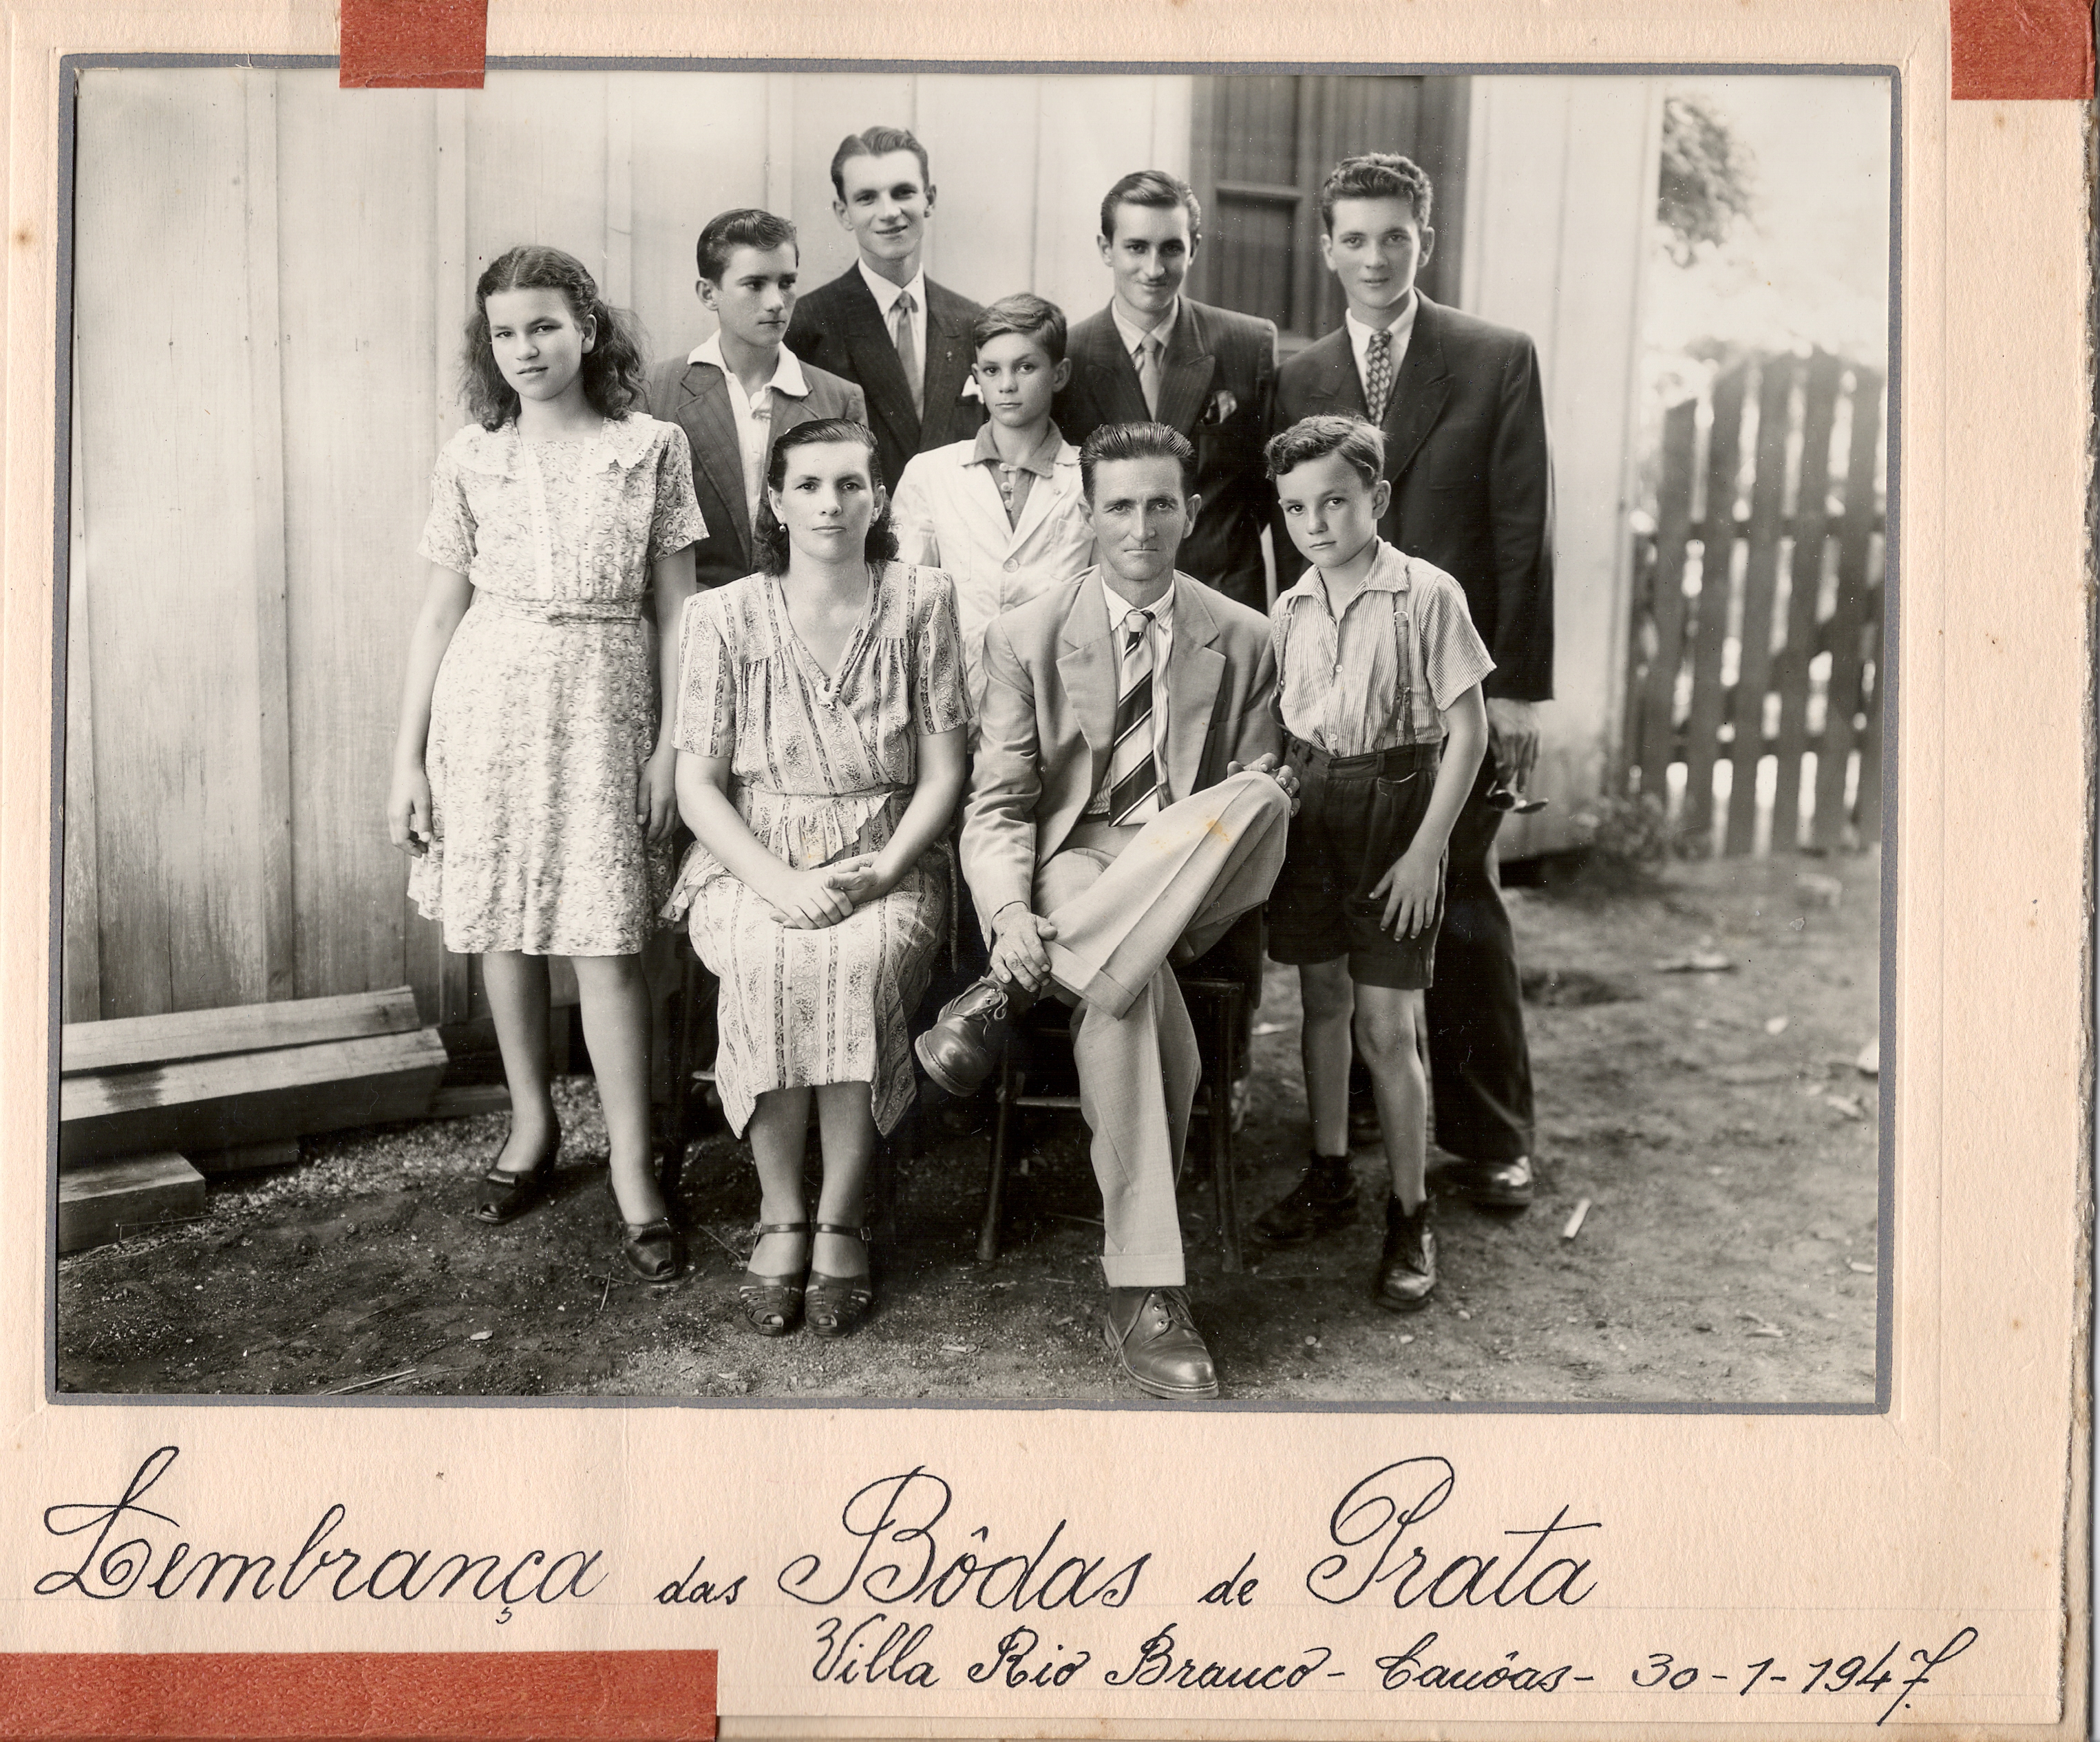 Possivelmente, José Carlos, o tio "Joca" e família, em 1947, Viamão. Acervo de família.